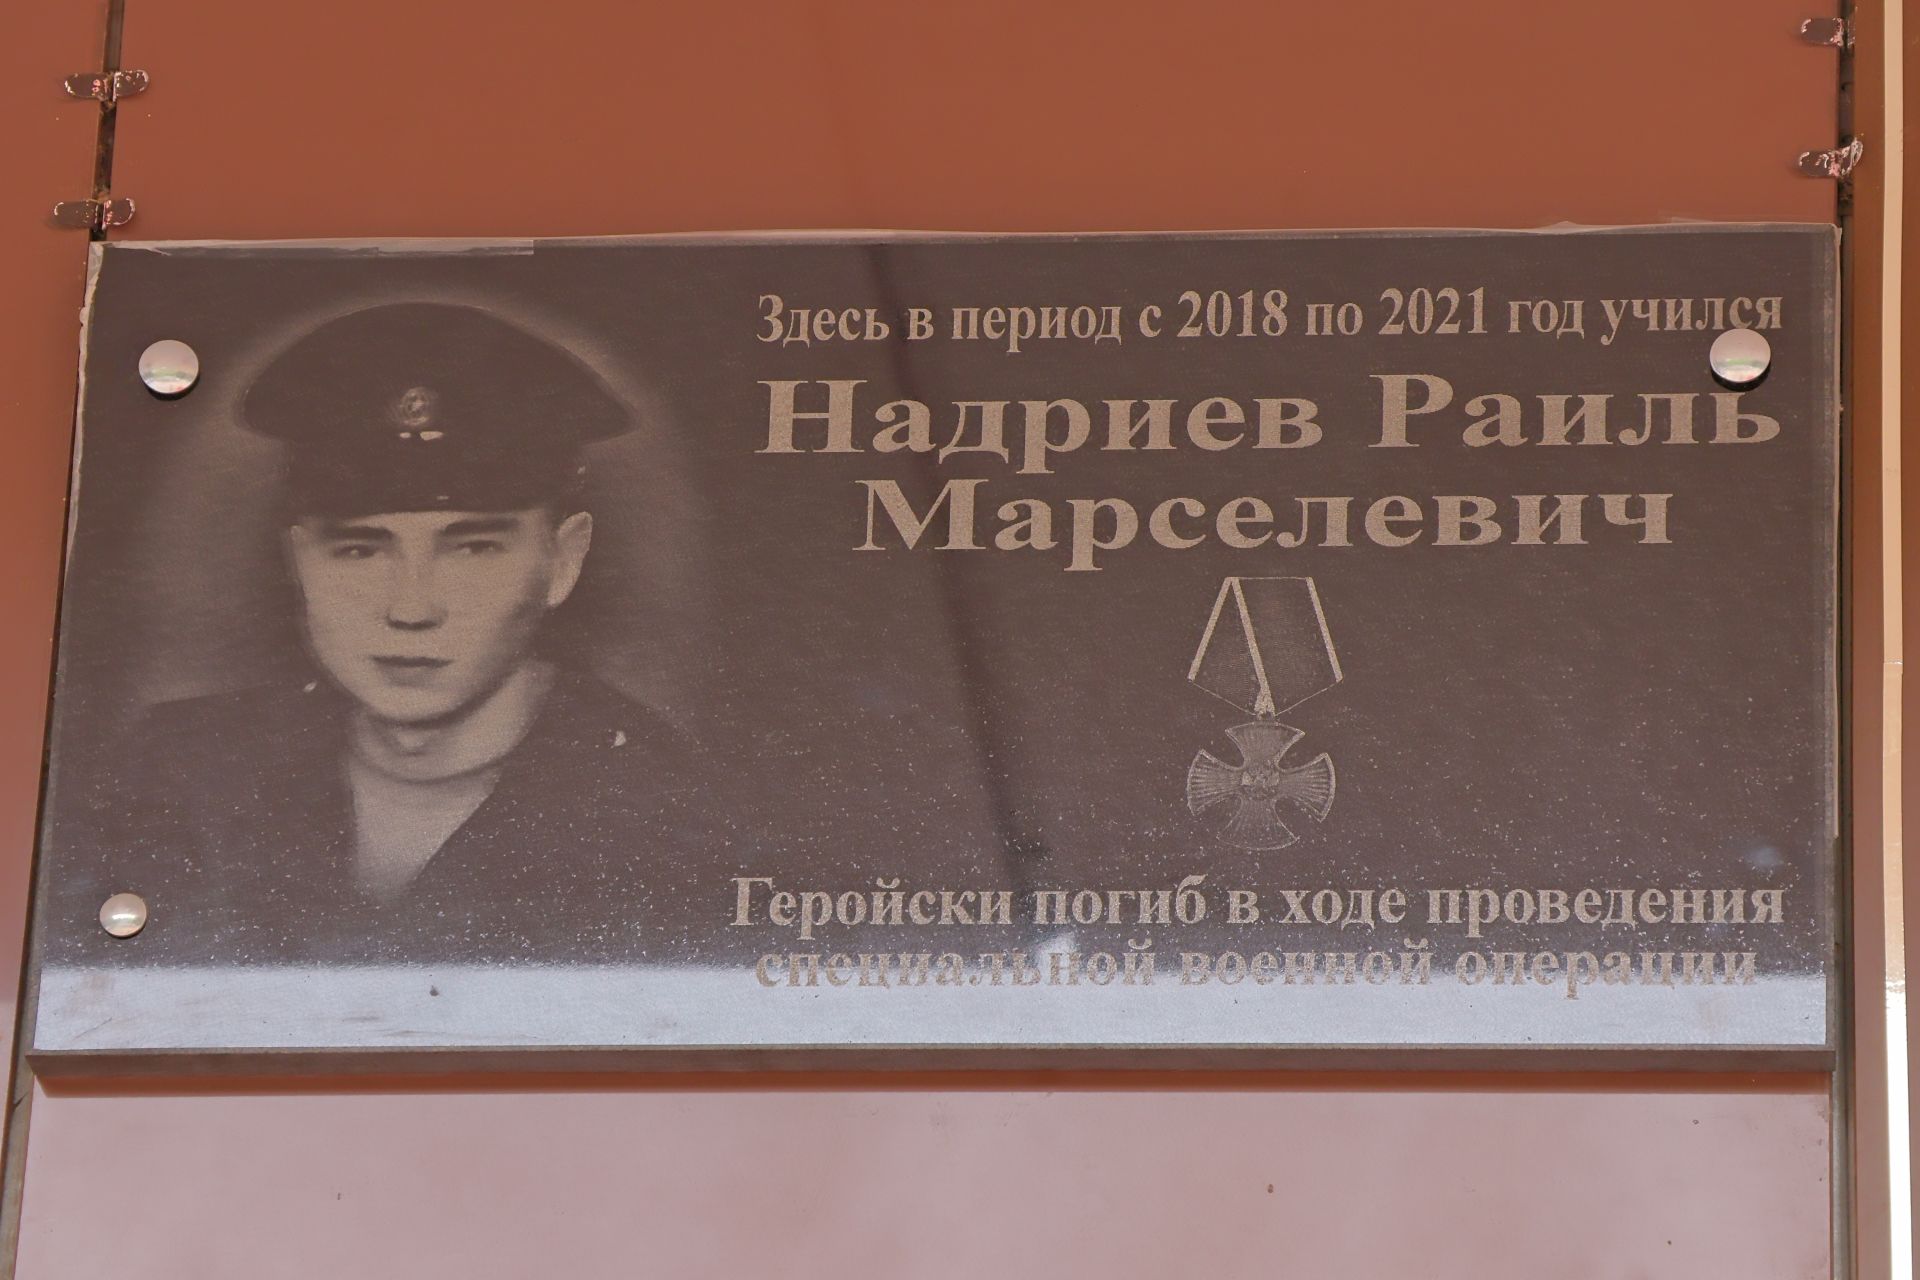 Махсус хәрби операциядә һәлак булган якташыбыз Раил Надриев- батырлык һәм горурлык үрнәге (фото һәм видео)